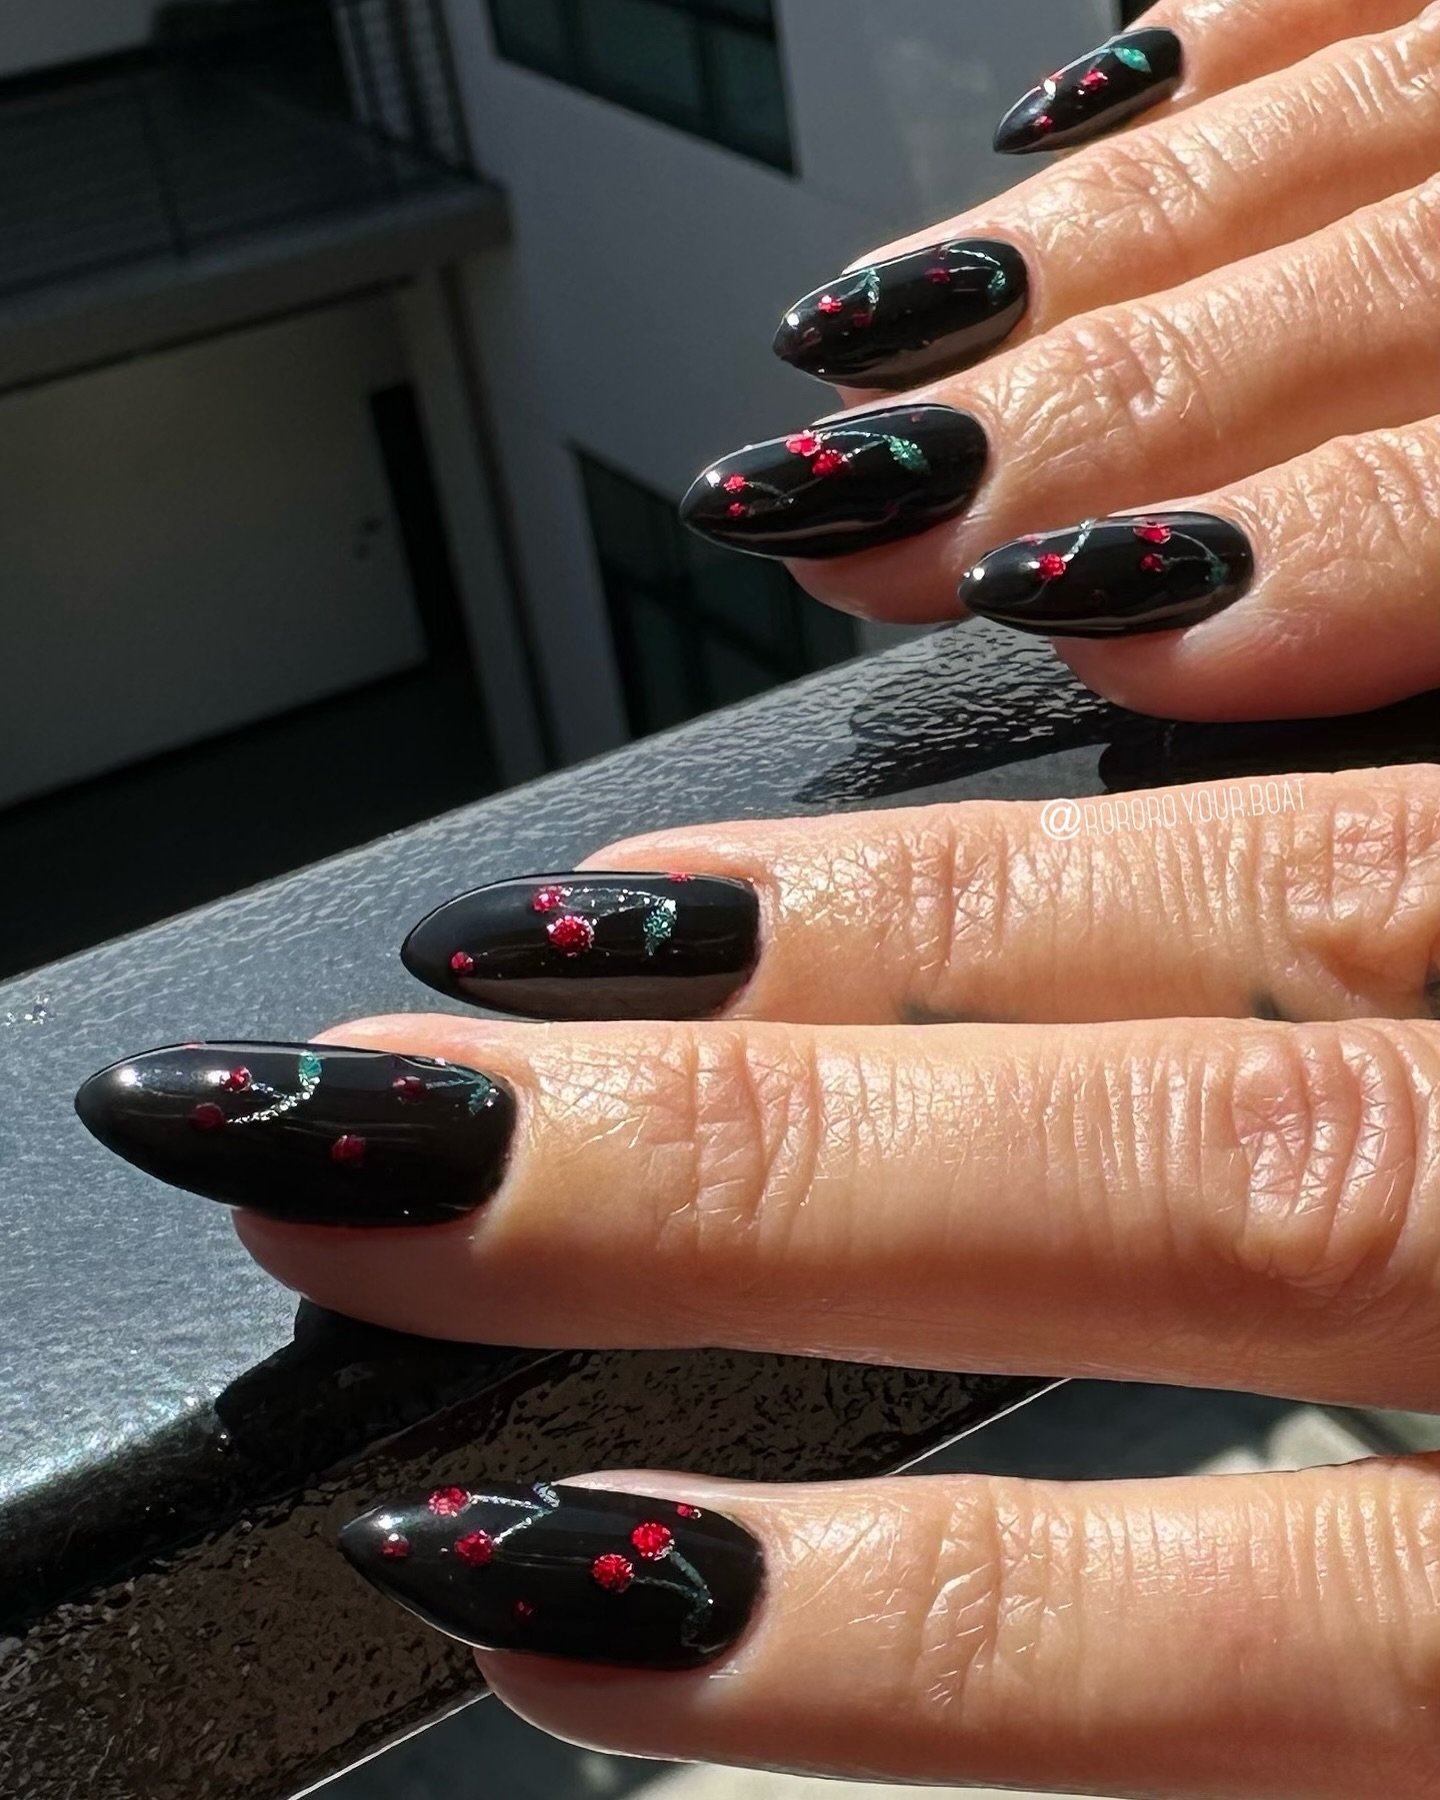 Velvet Cherries for @sevensays 🍒🍒 over our favorite color, black 🖤

#nailedbyrozel #ronailart30 #onlyblacknails